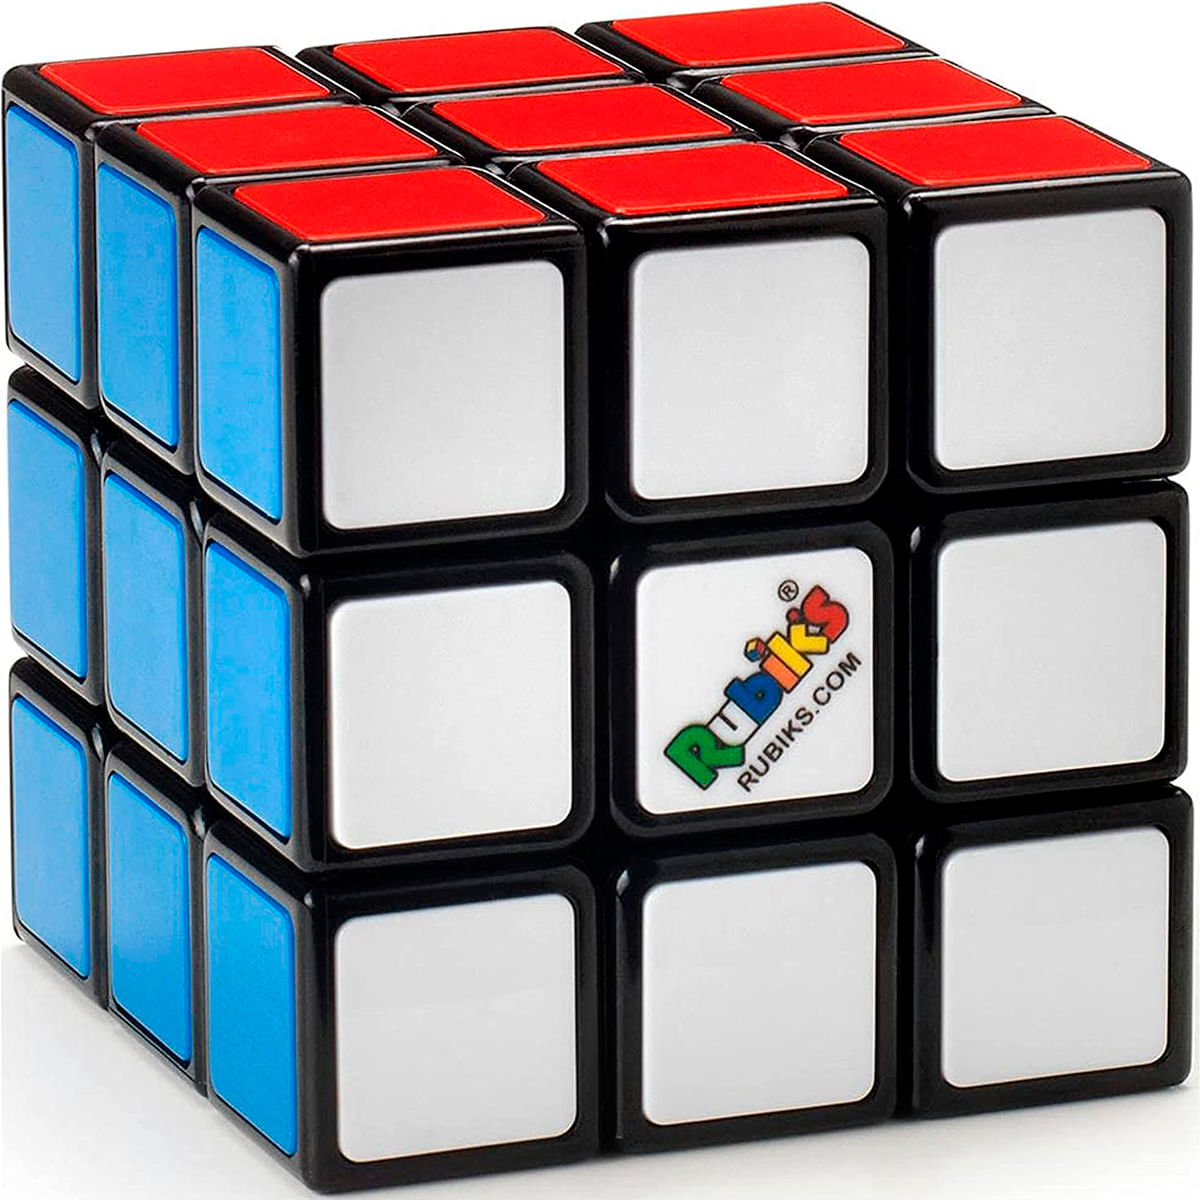 Cubo En Cubo 3x3 Rubik's Cubo 3x3